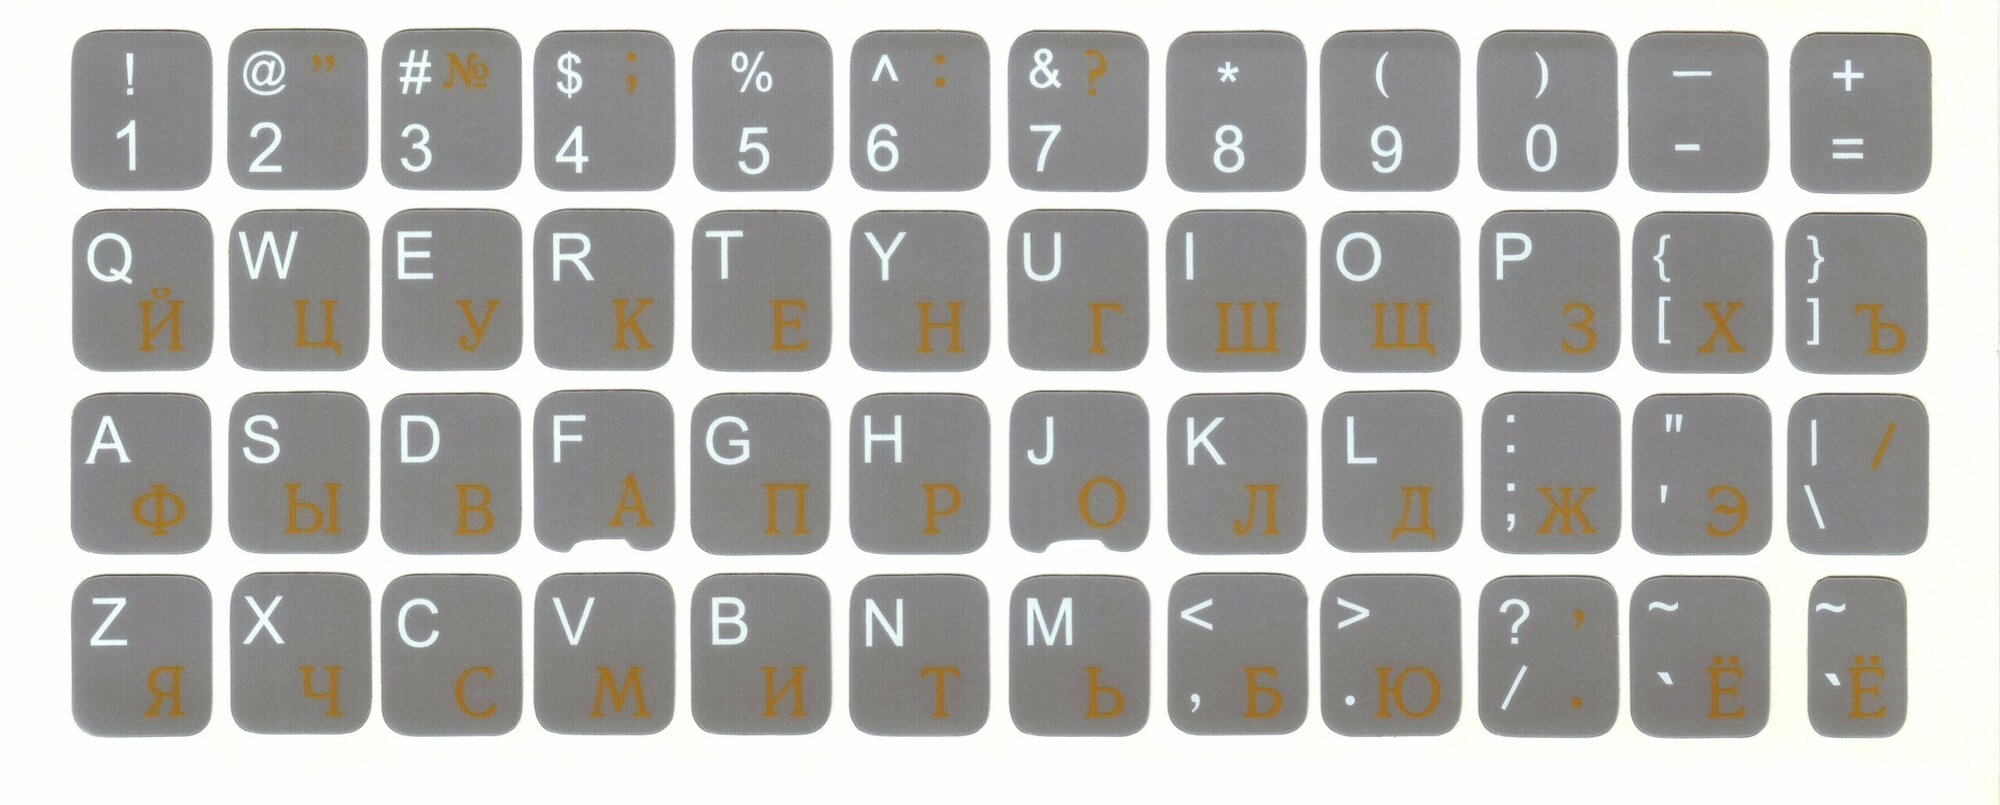 Наклейки на клавиатуру нестираемые, матовые, рус/лат, 11х13 мм, 112 симв, тёмно-серый фон, русские буквы жёлтые